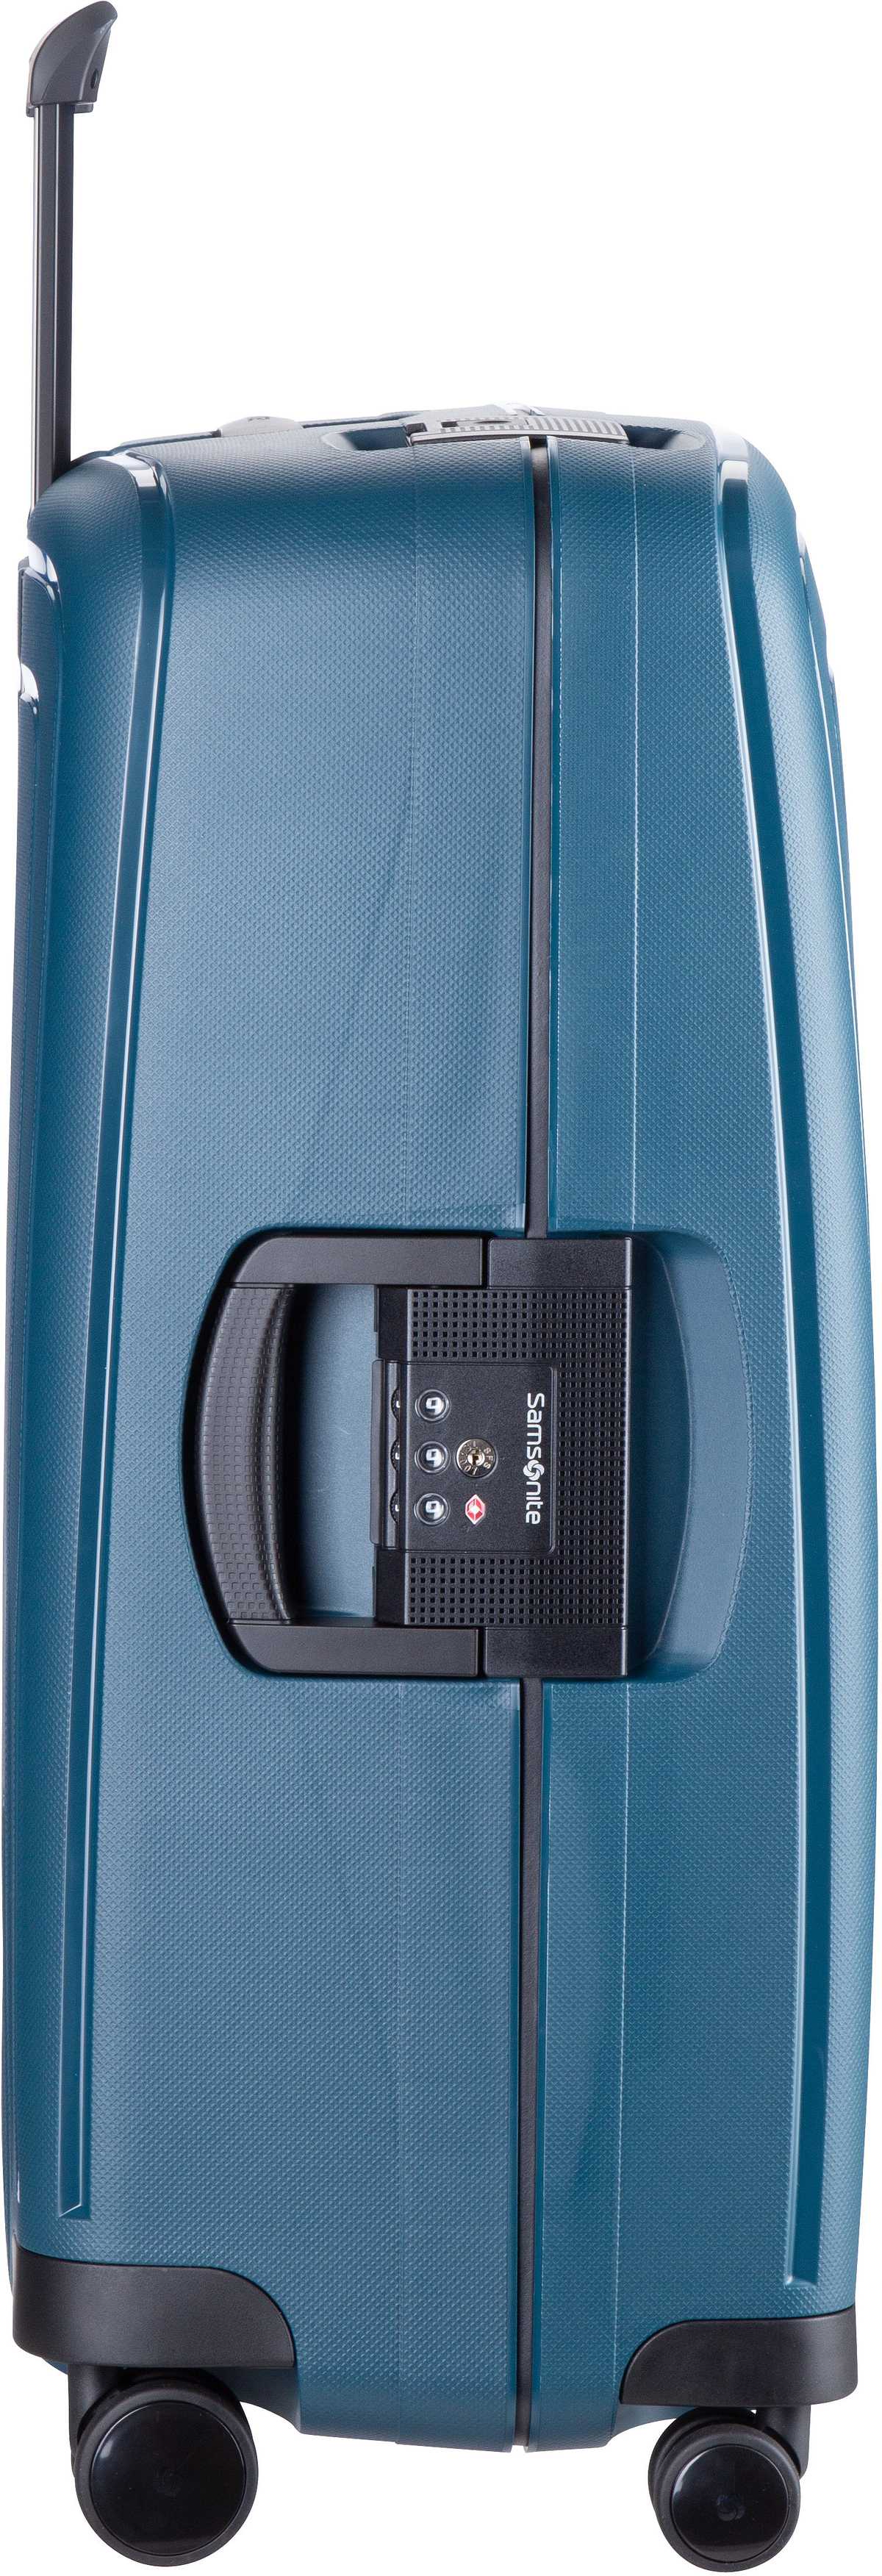 Samsonite S'Cure Eco Spinner 69 Post Consumer - Navy Blue